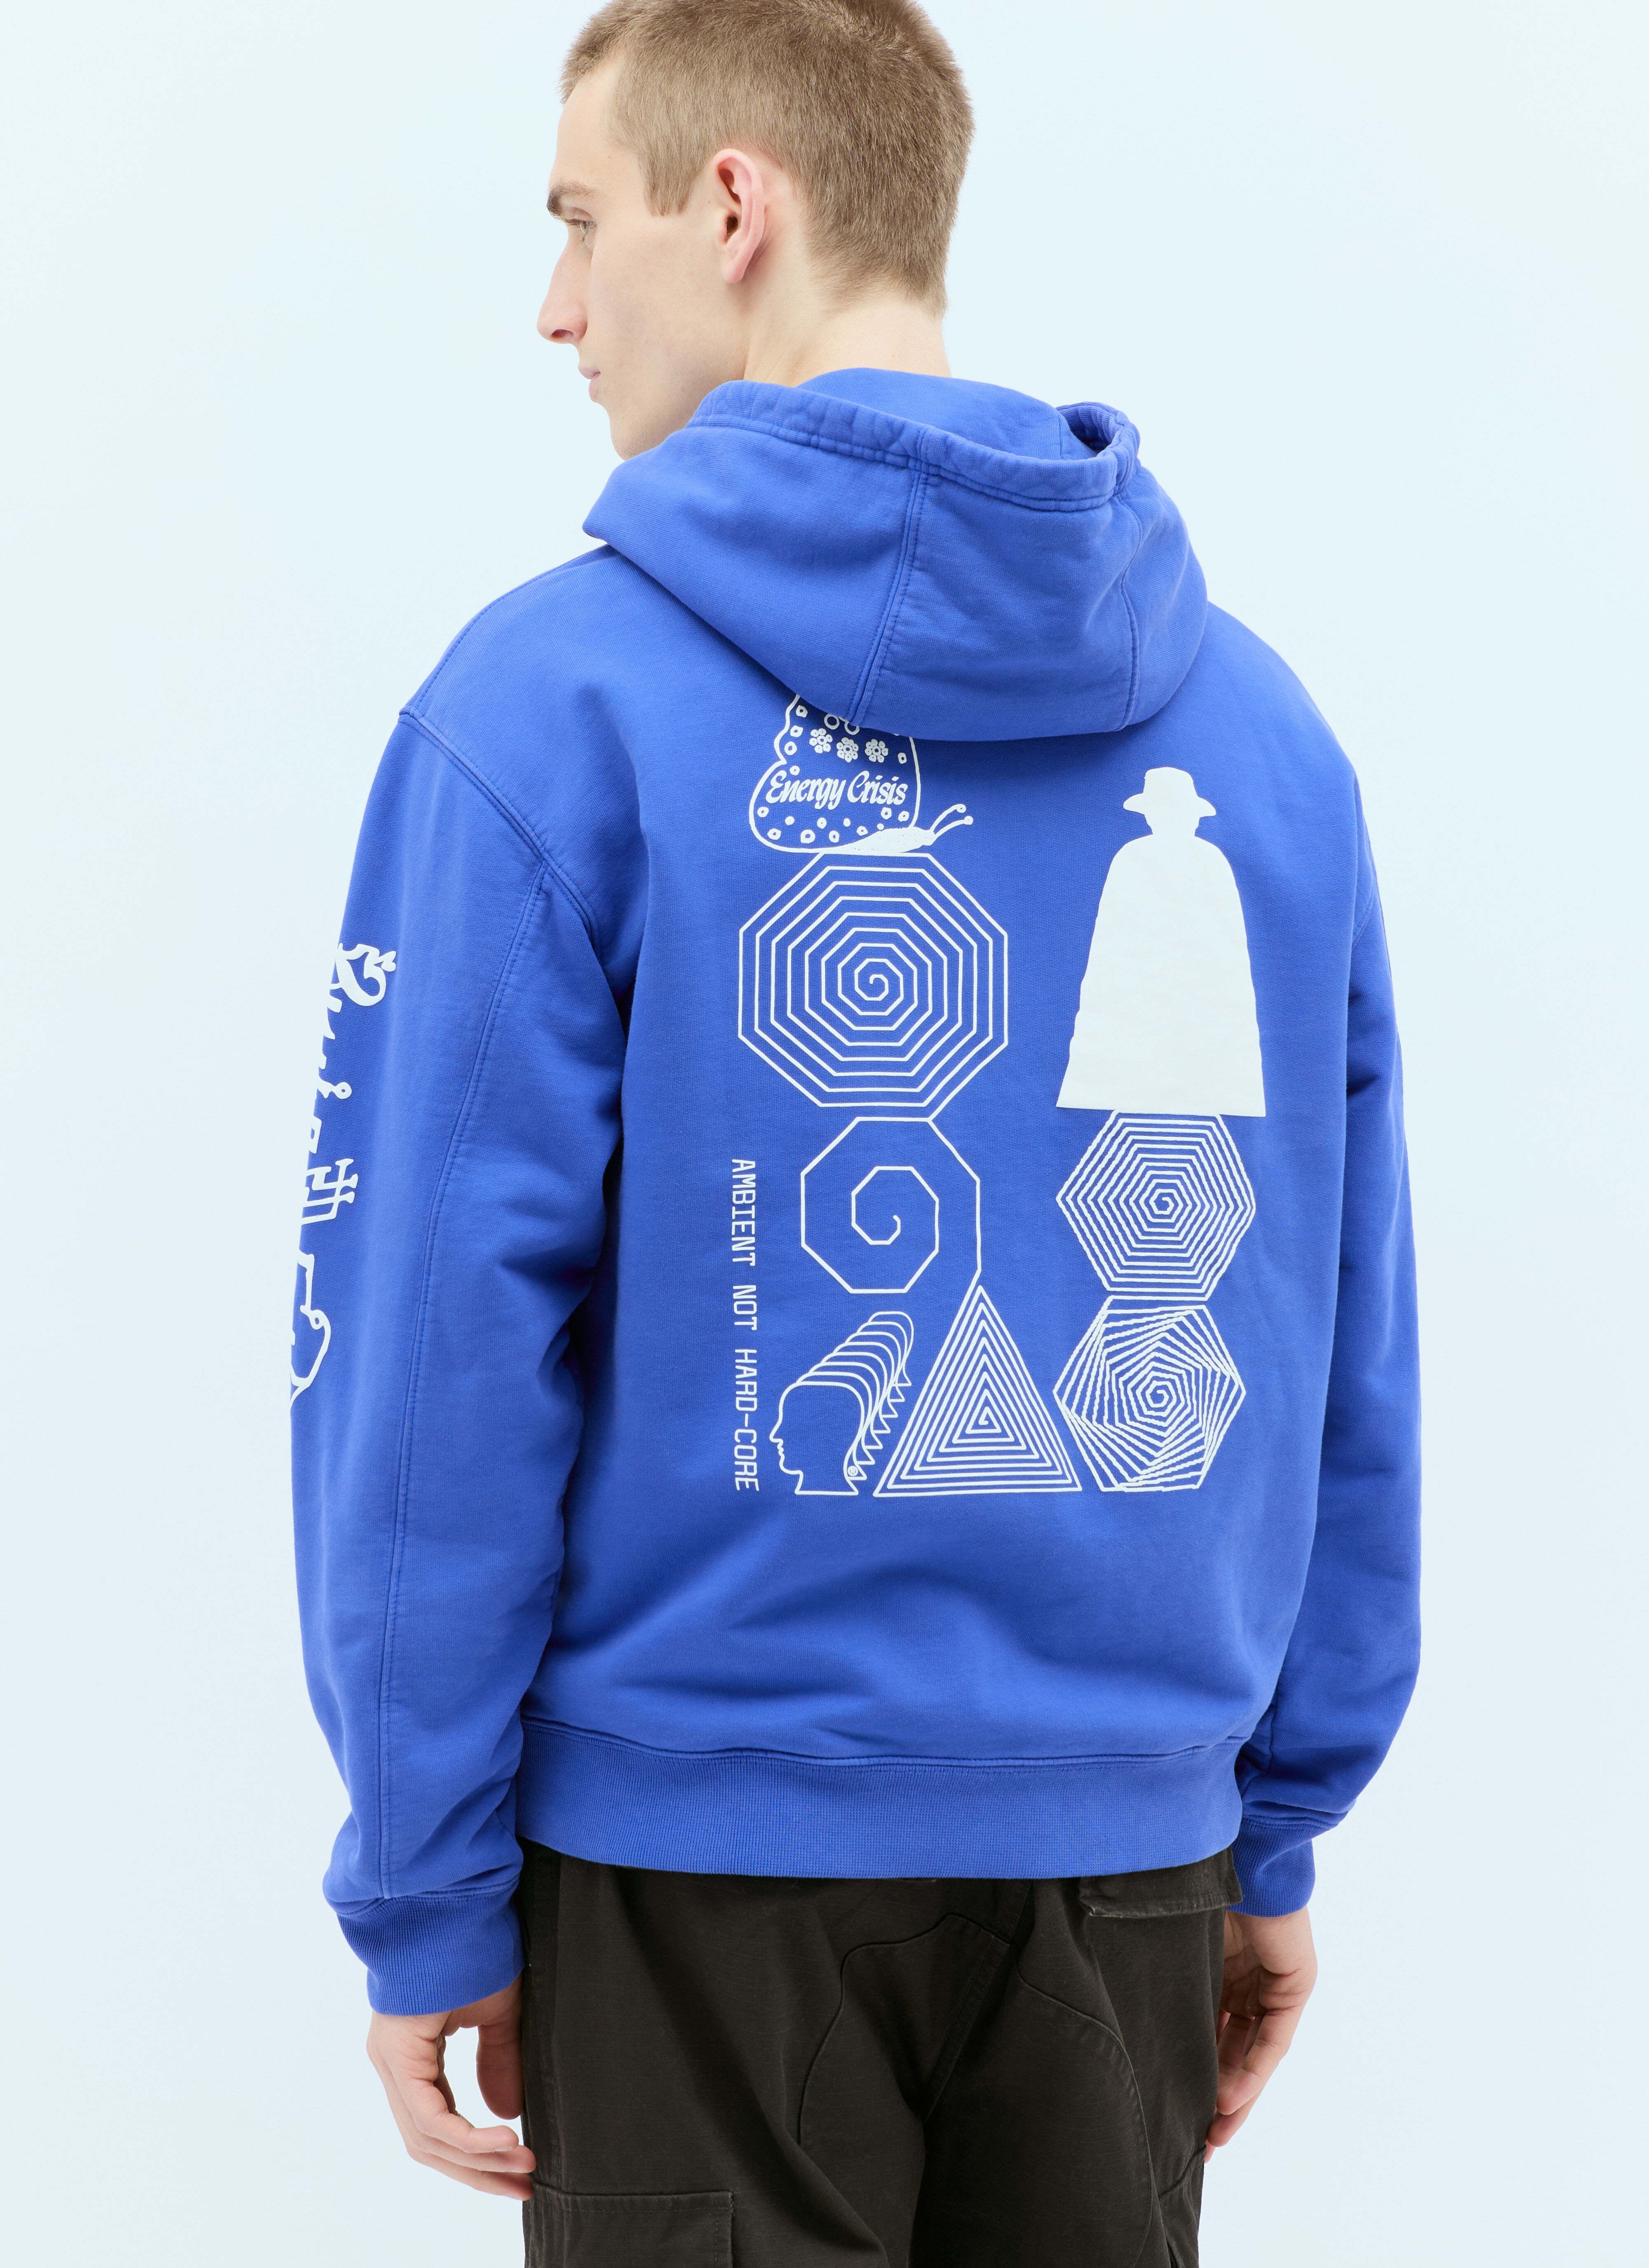 Electronique Hooded Sweatshirt - 5